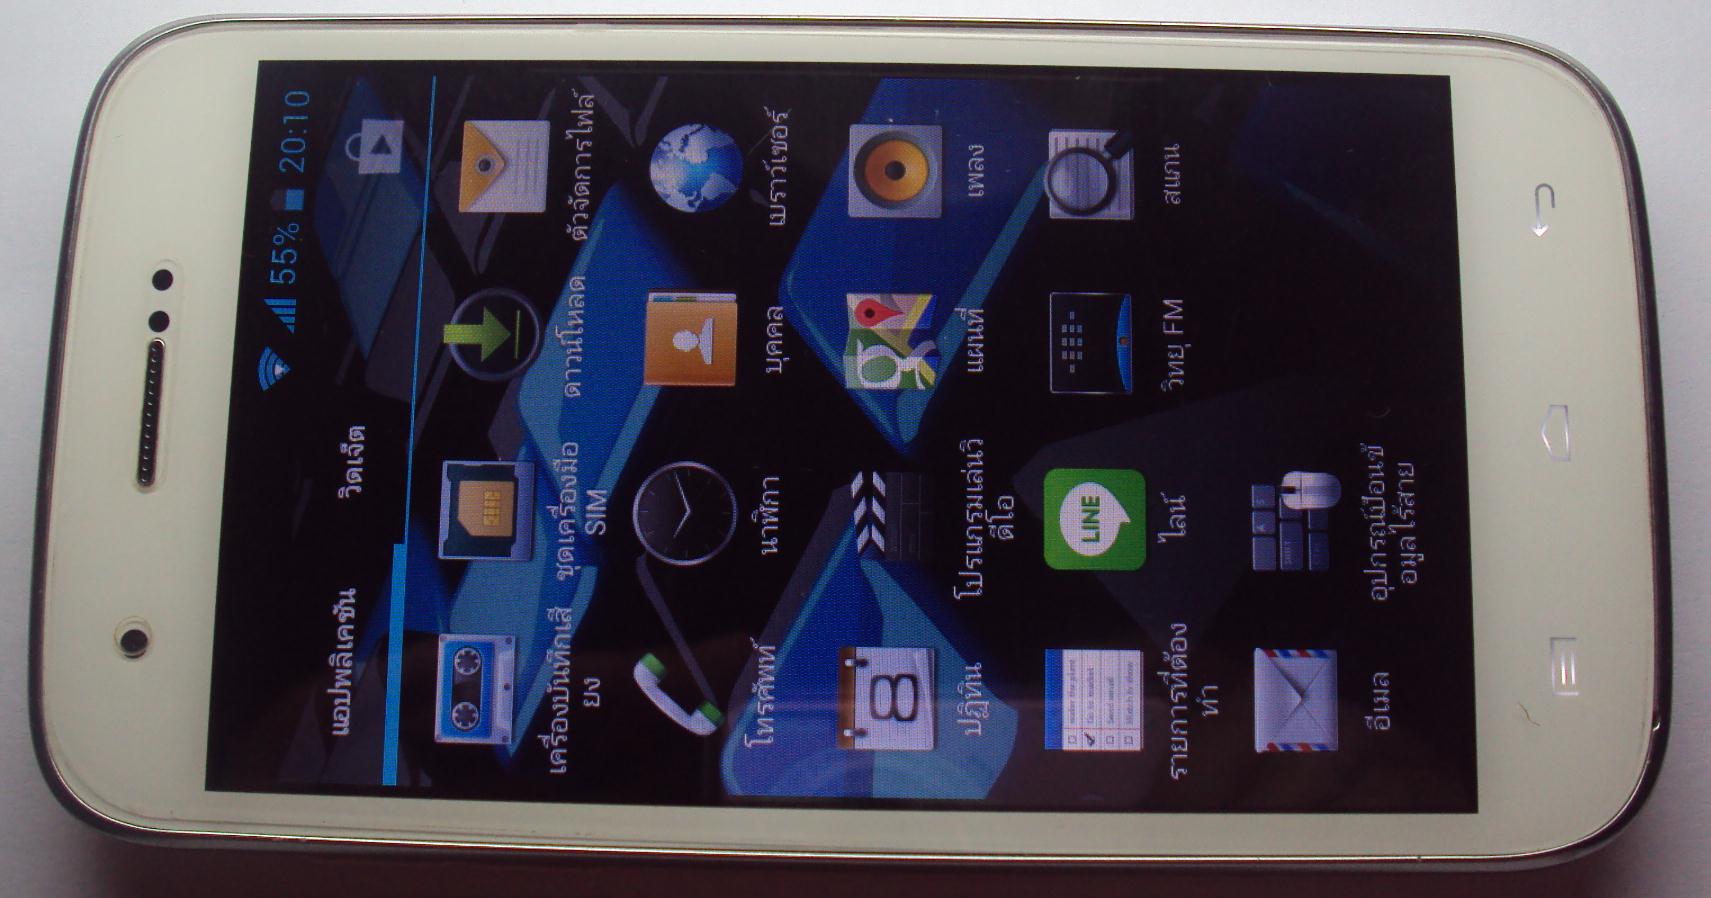  i-mobile i-STYLE 8 - ไอโมบาย